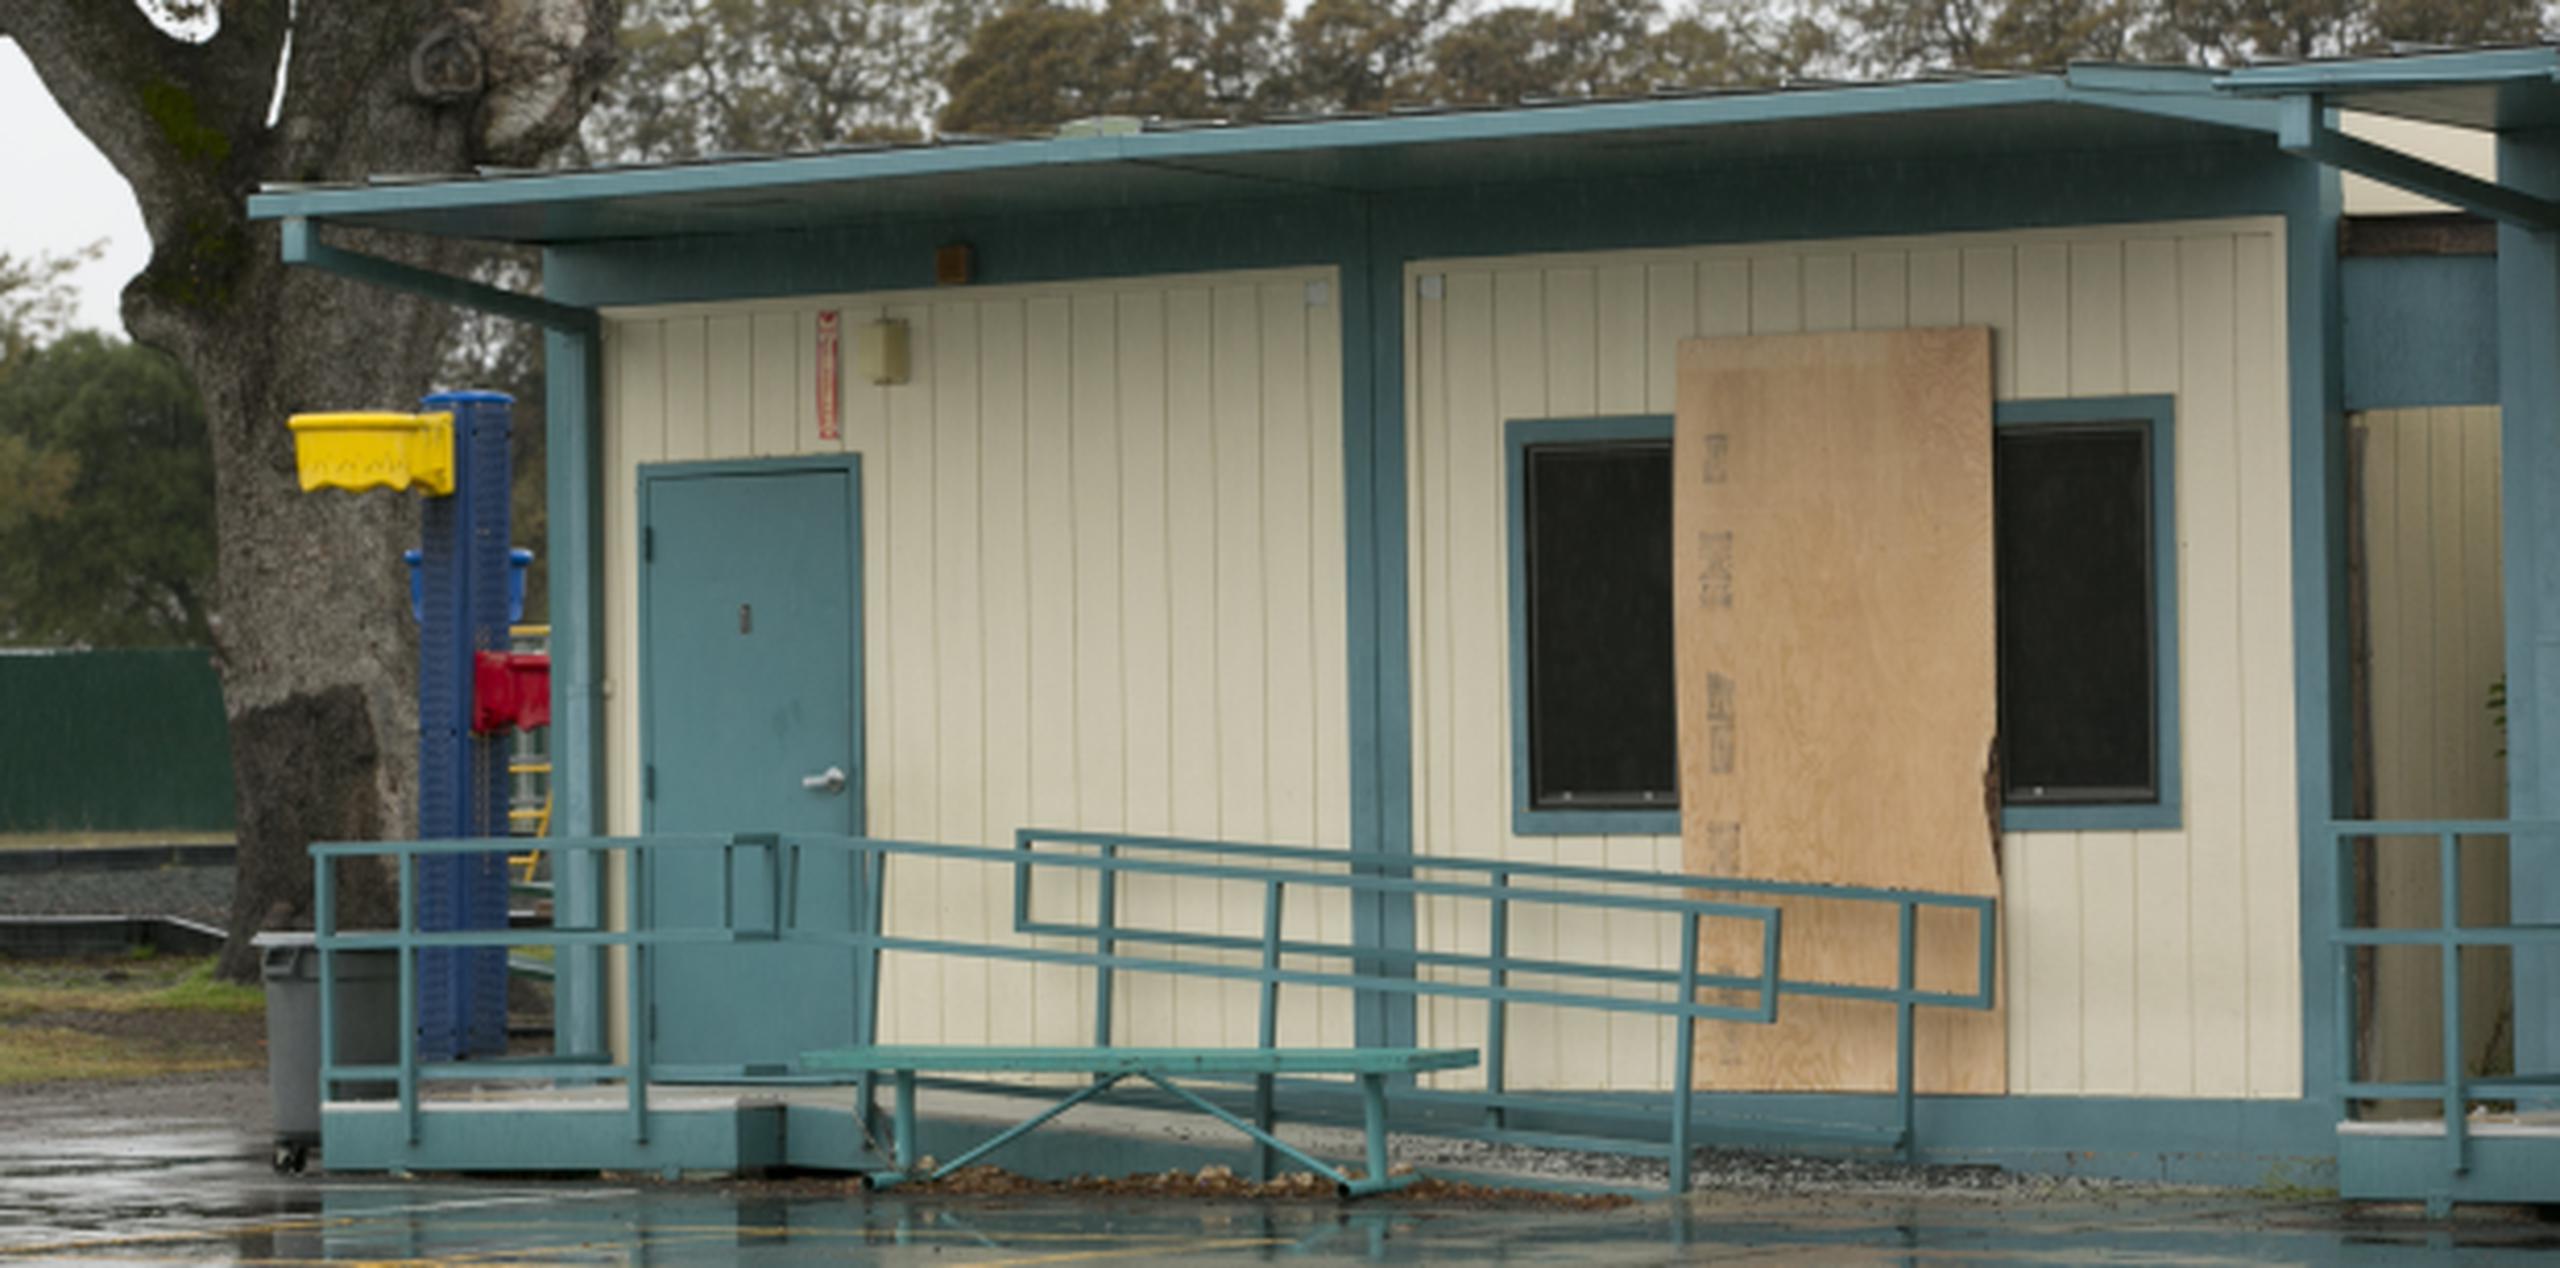 Dentro de la escuela elemental Rancho Tehama, los niños y algunos padres se refugiaron bajo las mesas mientras las balas perforaban las aulas portátiles. (AP / Rich Pedroncelli)